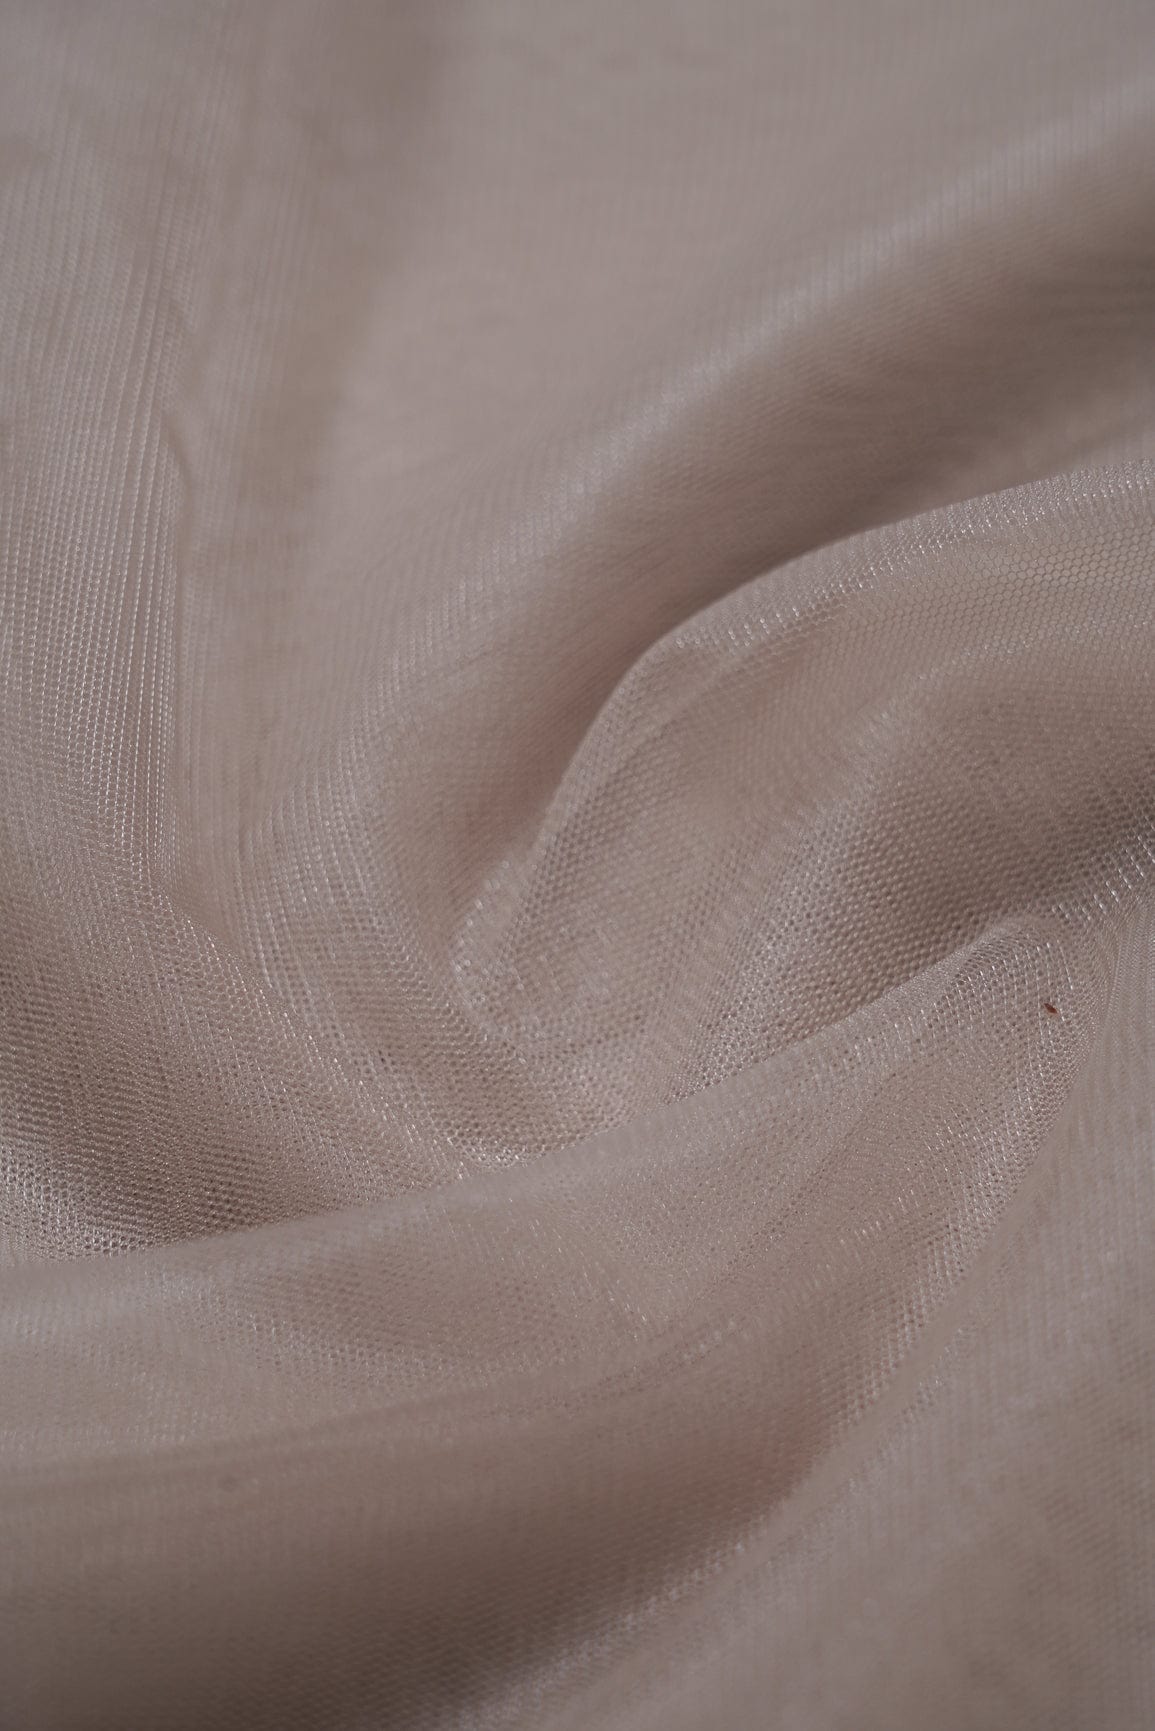 doeraa Plain Fabrics Light Brown Dyed Soft Net